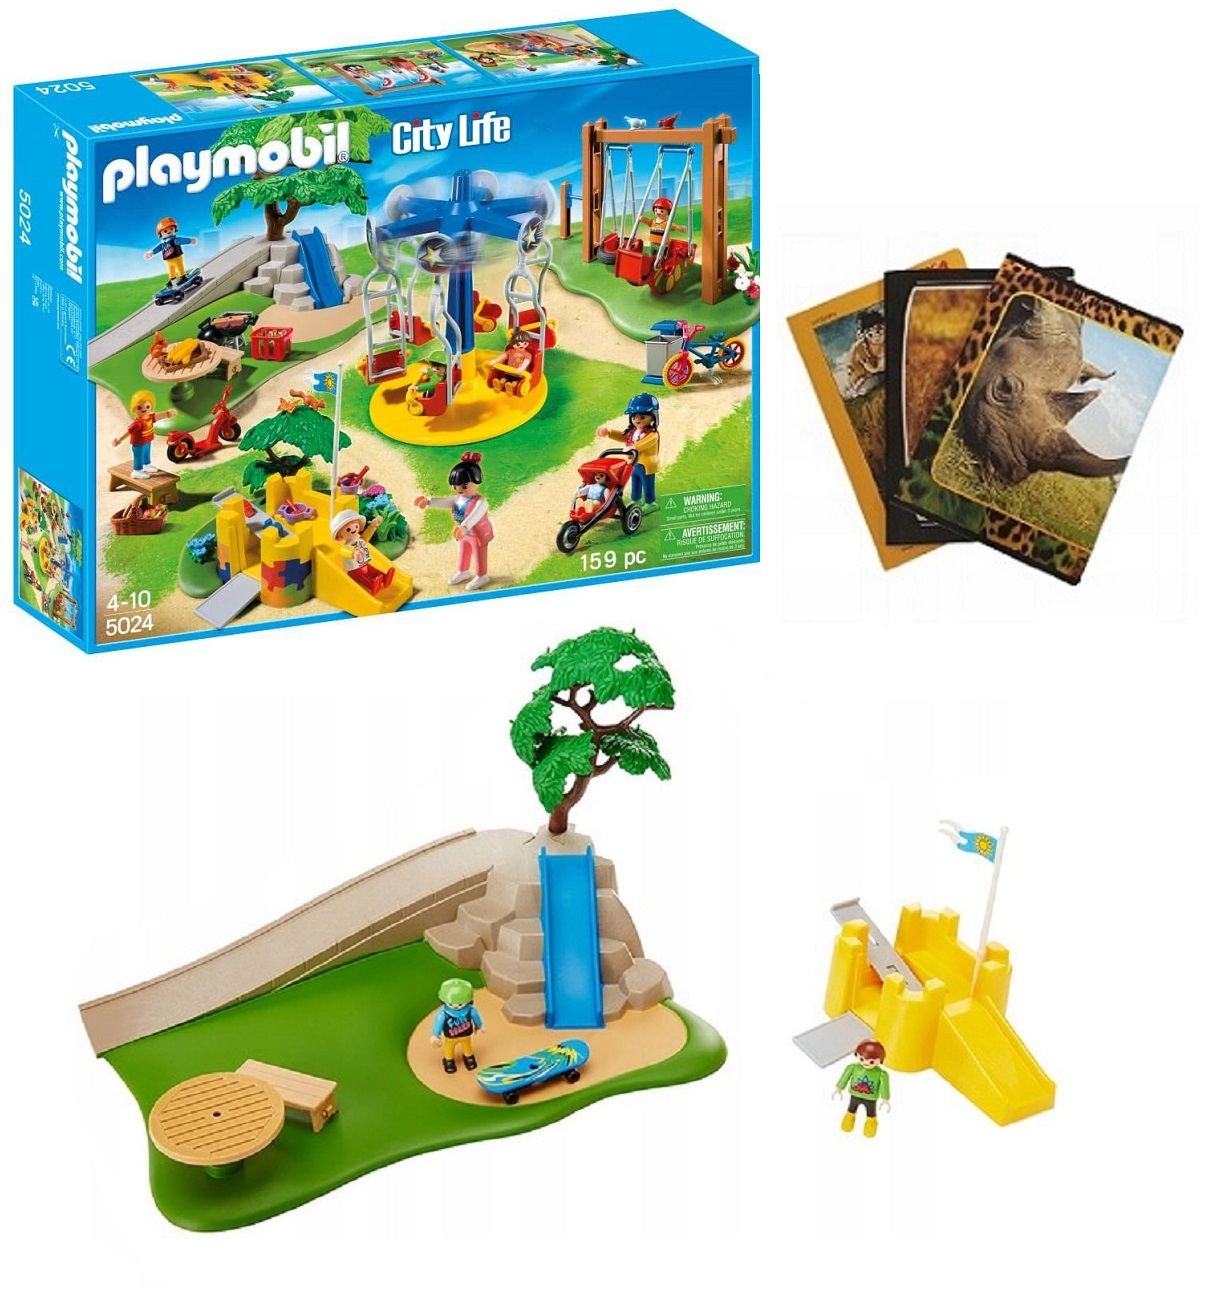 PLAYMOBIL City Life Playground - 5024 